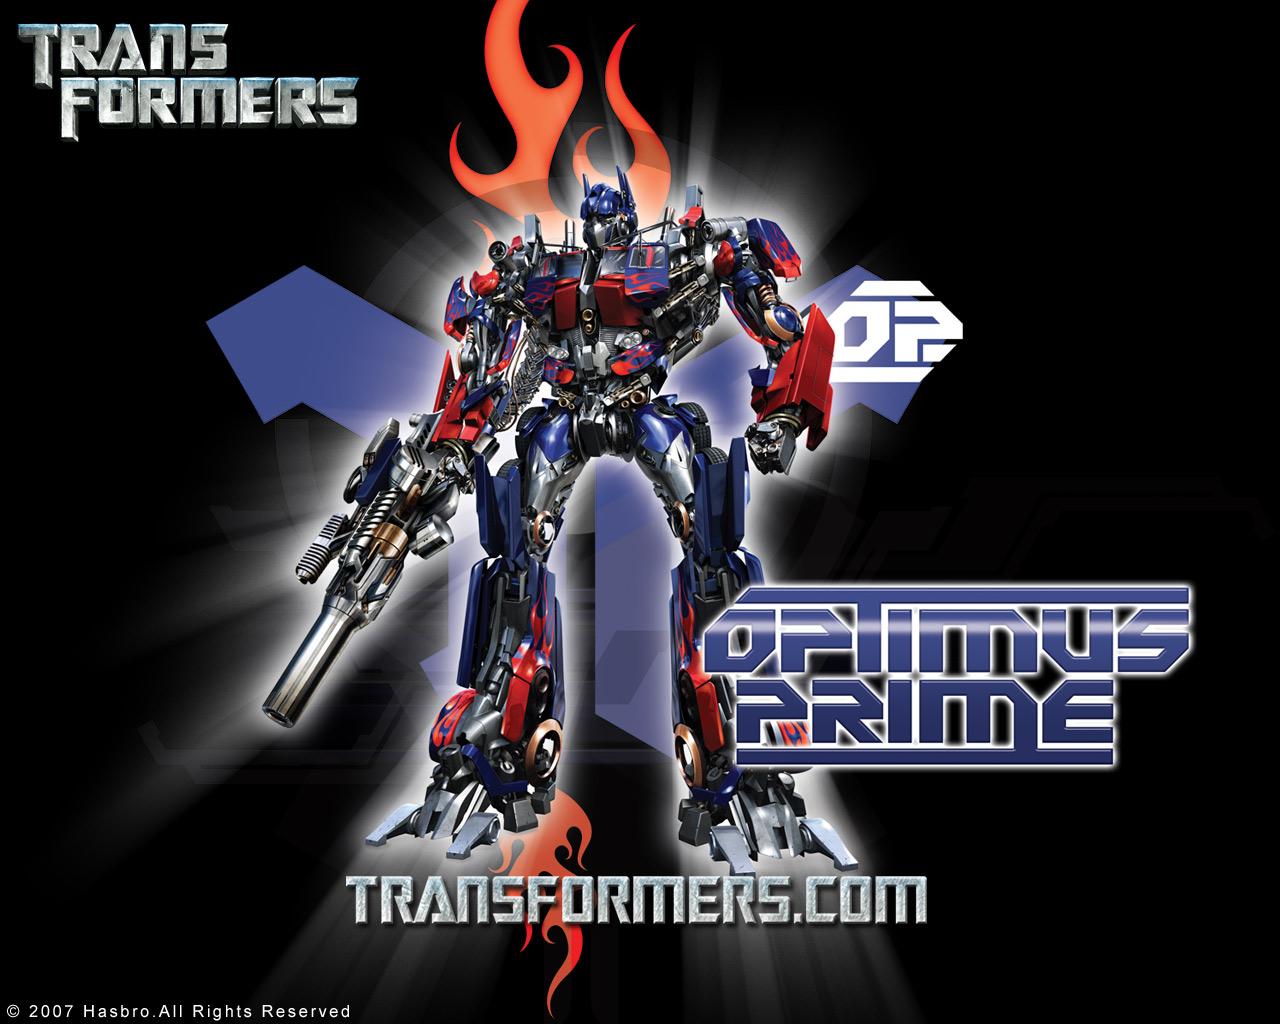 TRANSFORMERS Wallpaper: OPTIMUS PRIME|Transformers|Hasbro